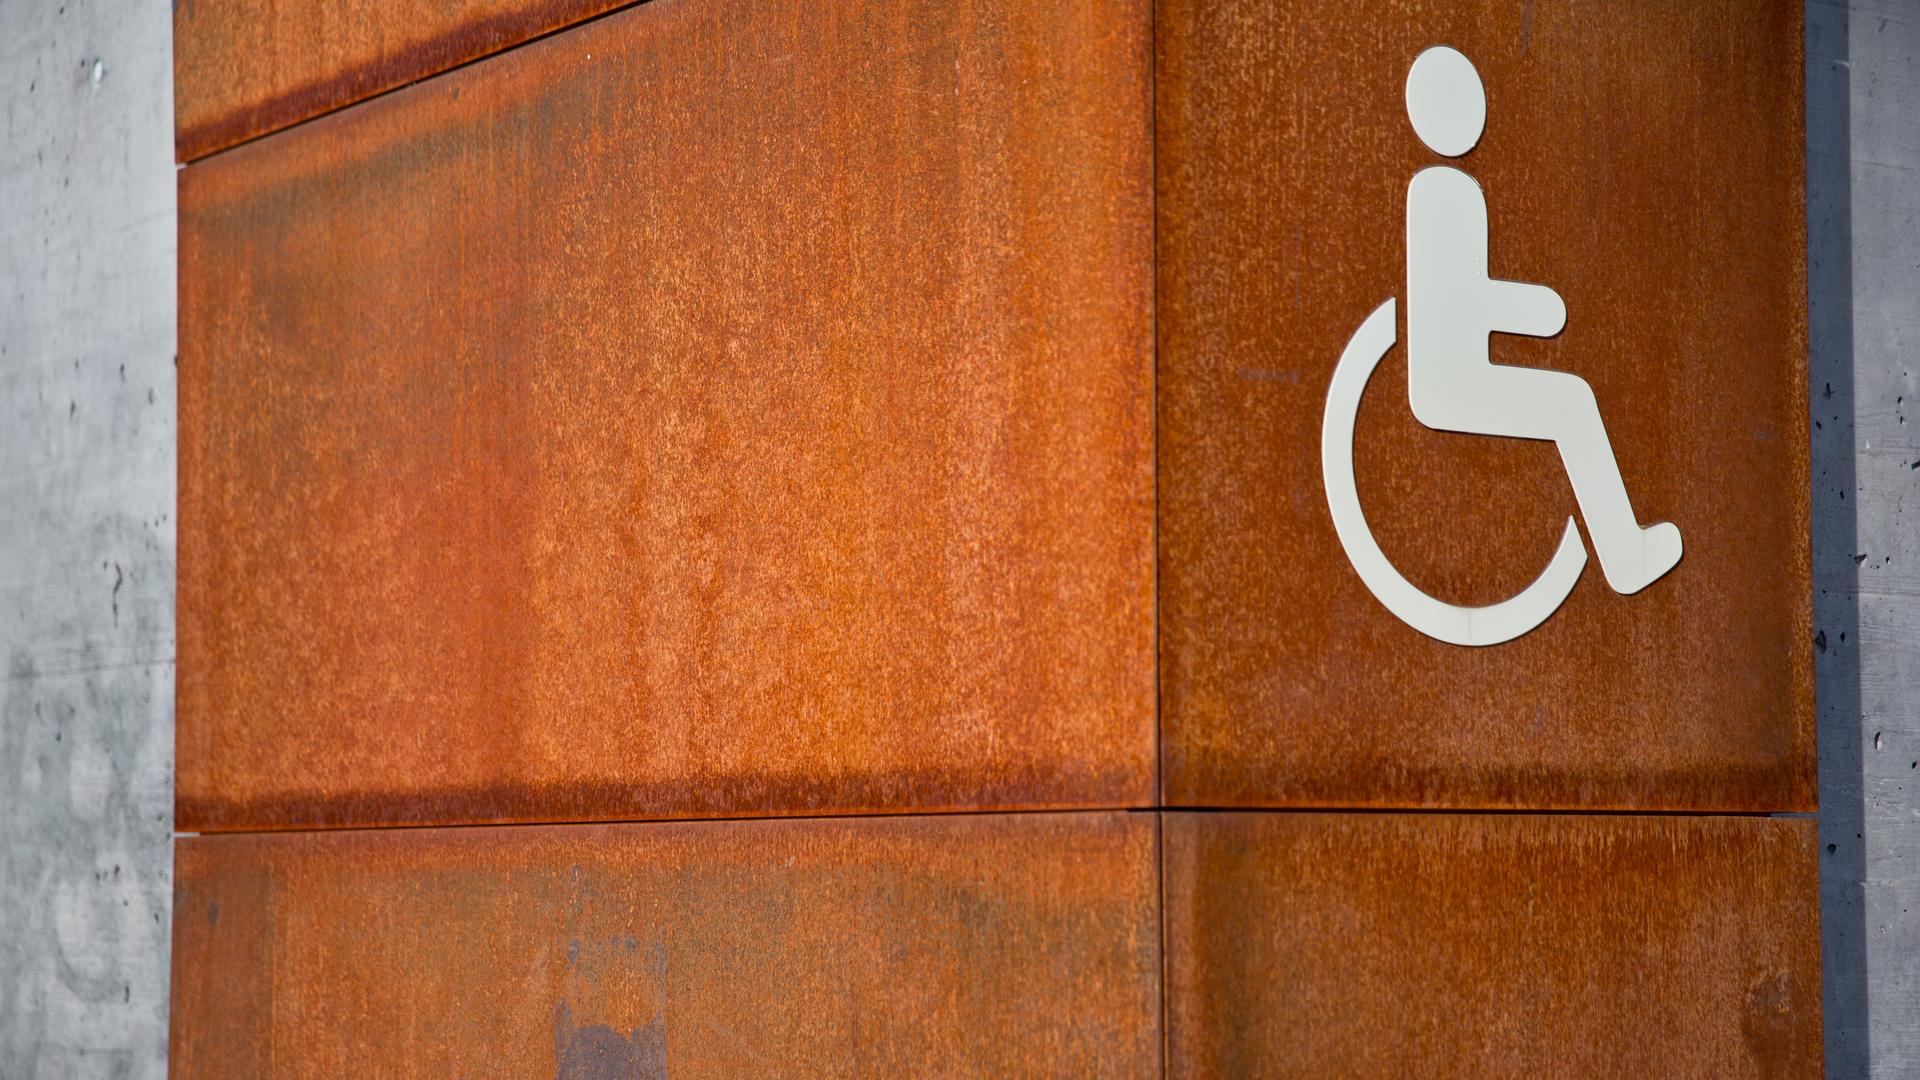 Das Bild zeigt das Piktogramm für Menschen mit Behinderung an einer Wand.